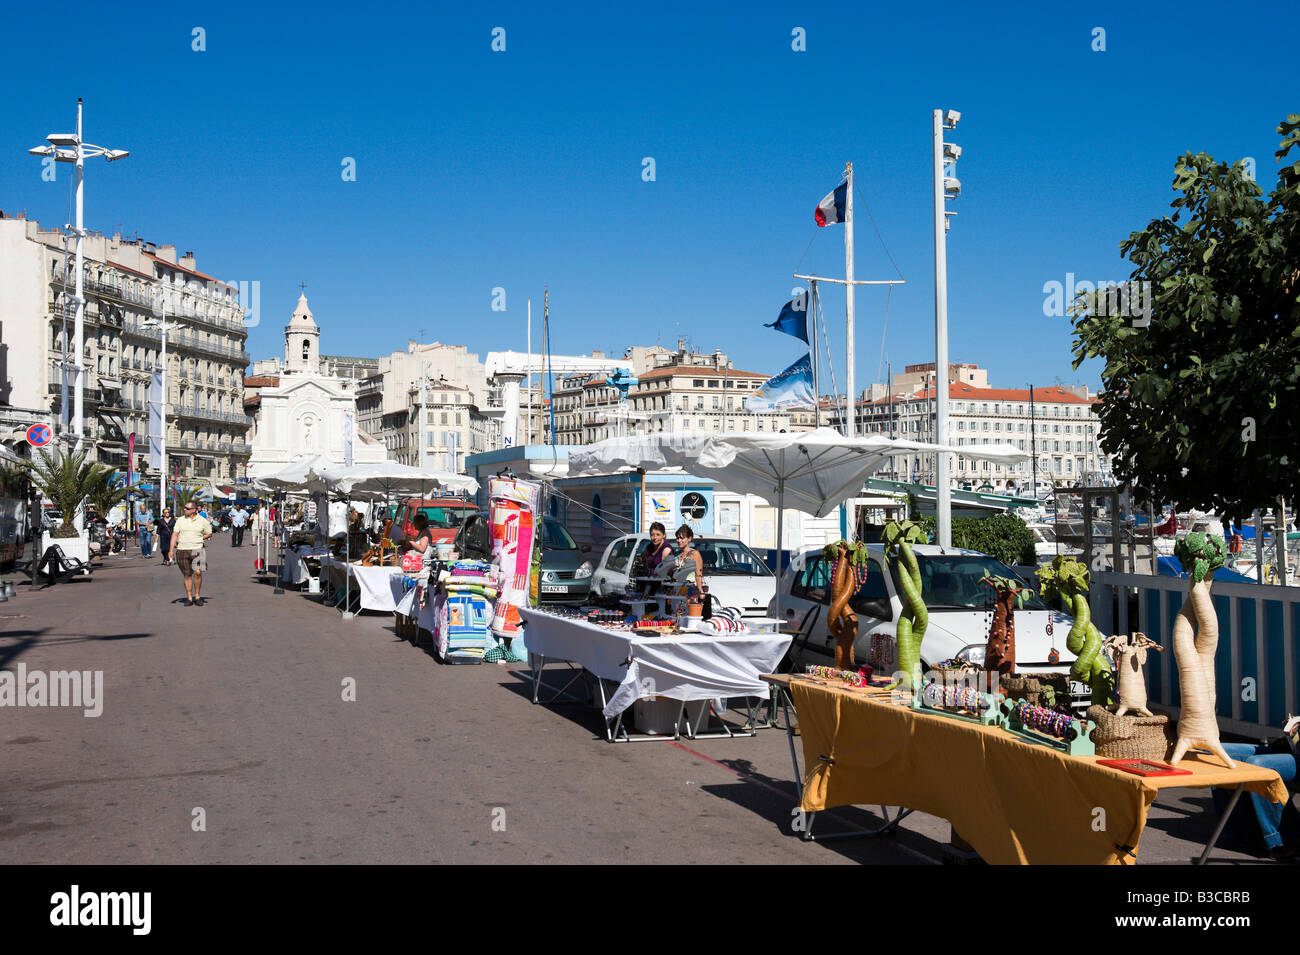 Market stalls on the quayside in the Vieux Port, Quai du Port, Marseille, Cote d'Azur, France Stock Photo